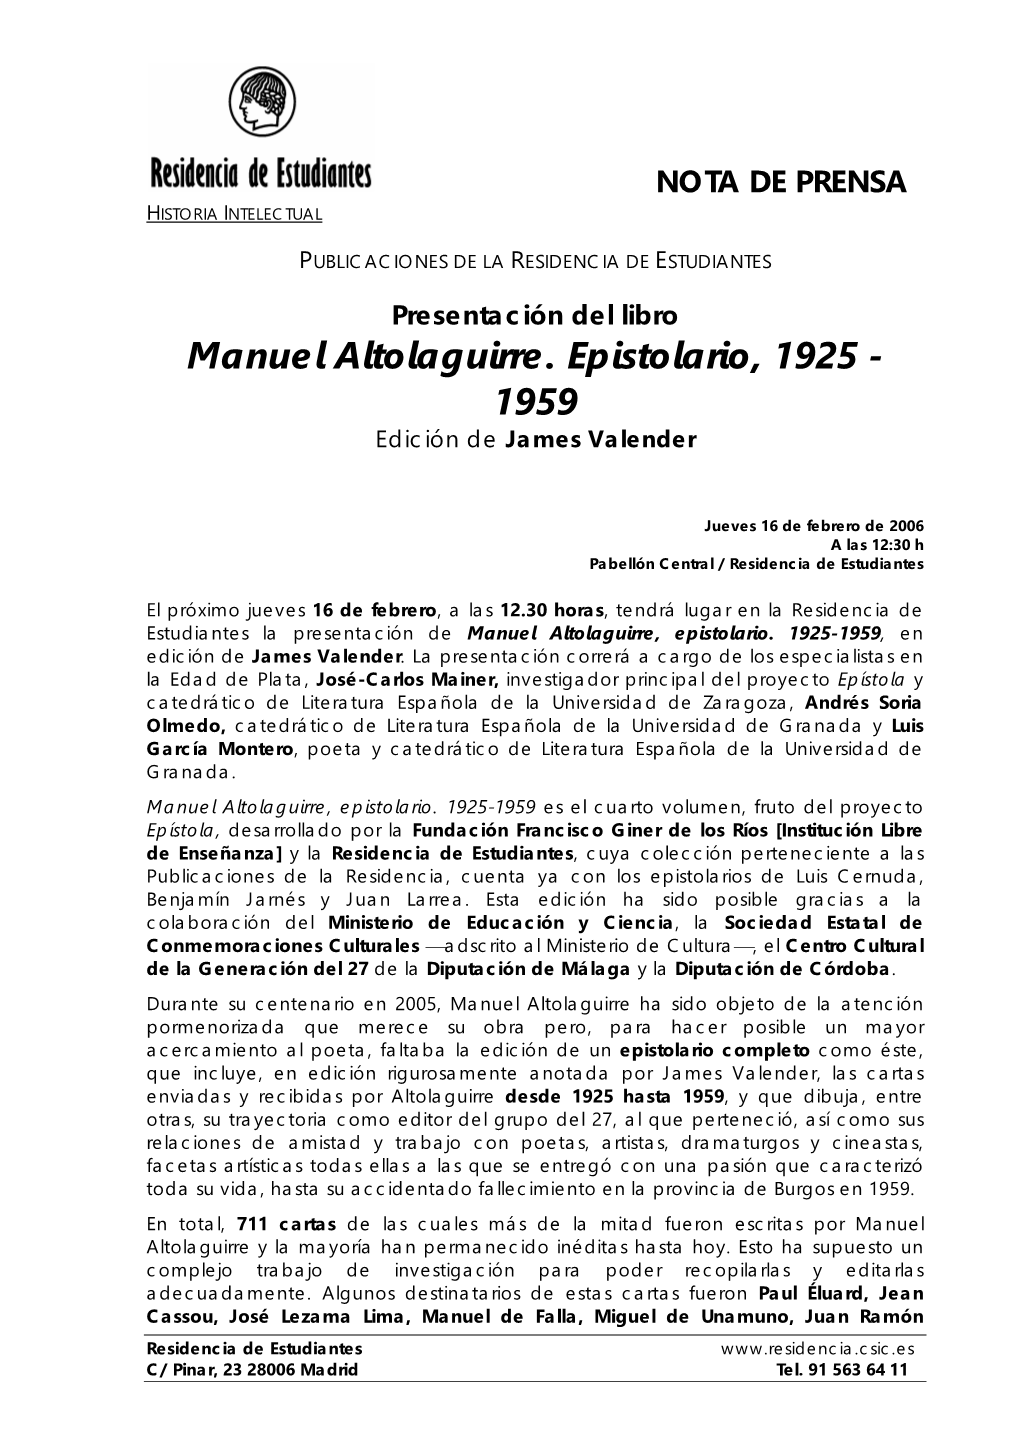 Manuel Altolaguirre. Epistolario, 1925 - 1959 Edición De James Valender